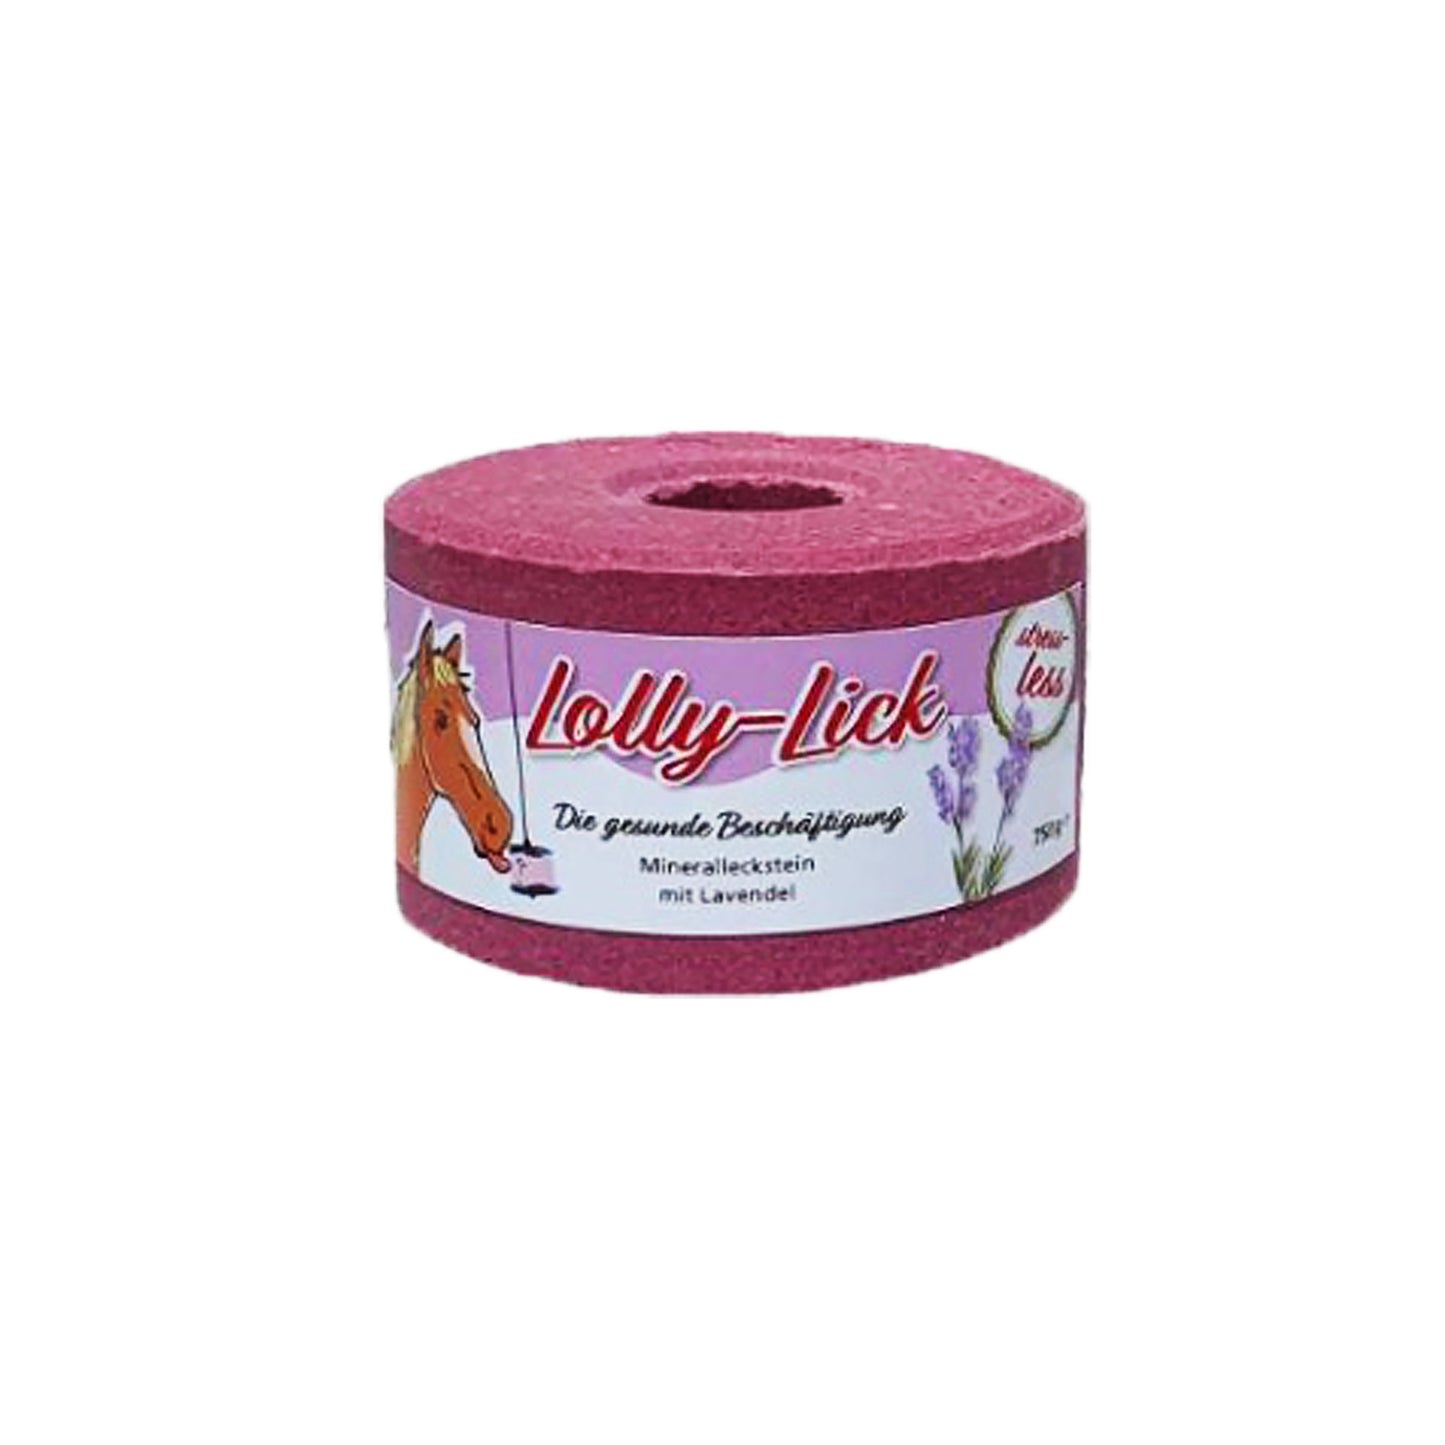 Lolly lick 750gr | Lolly lick | El gaucho sport